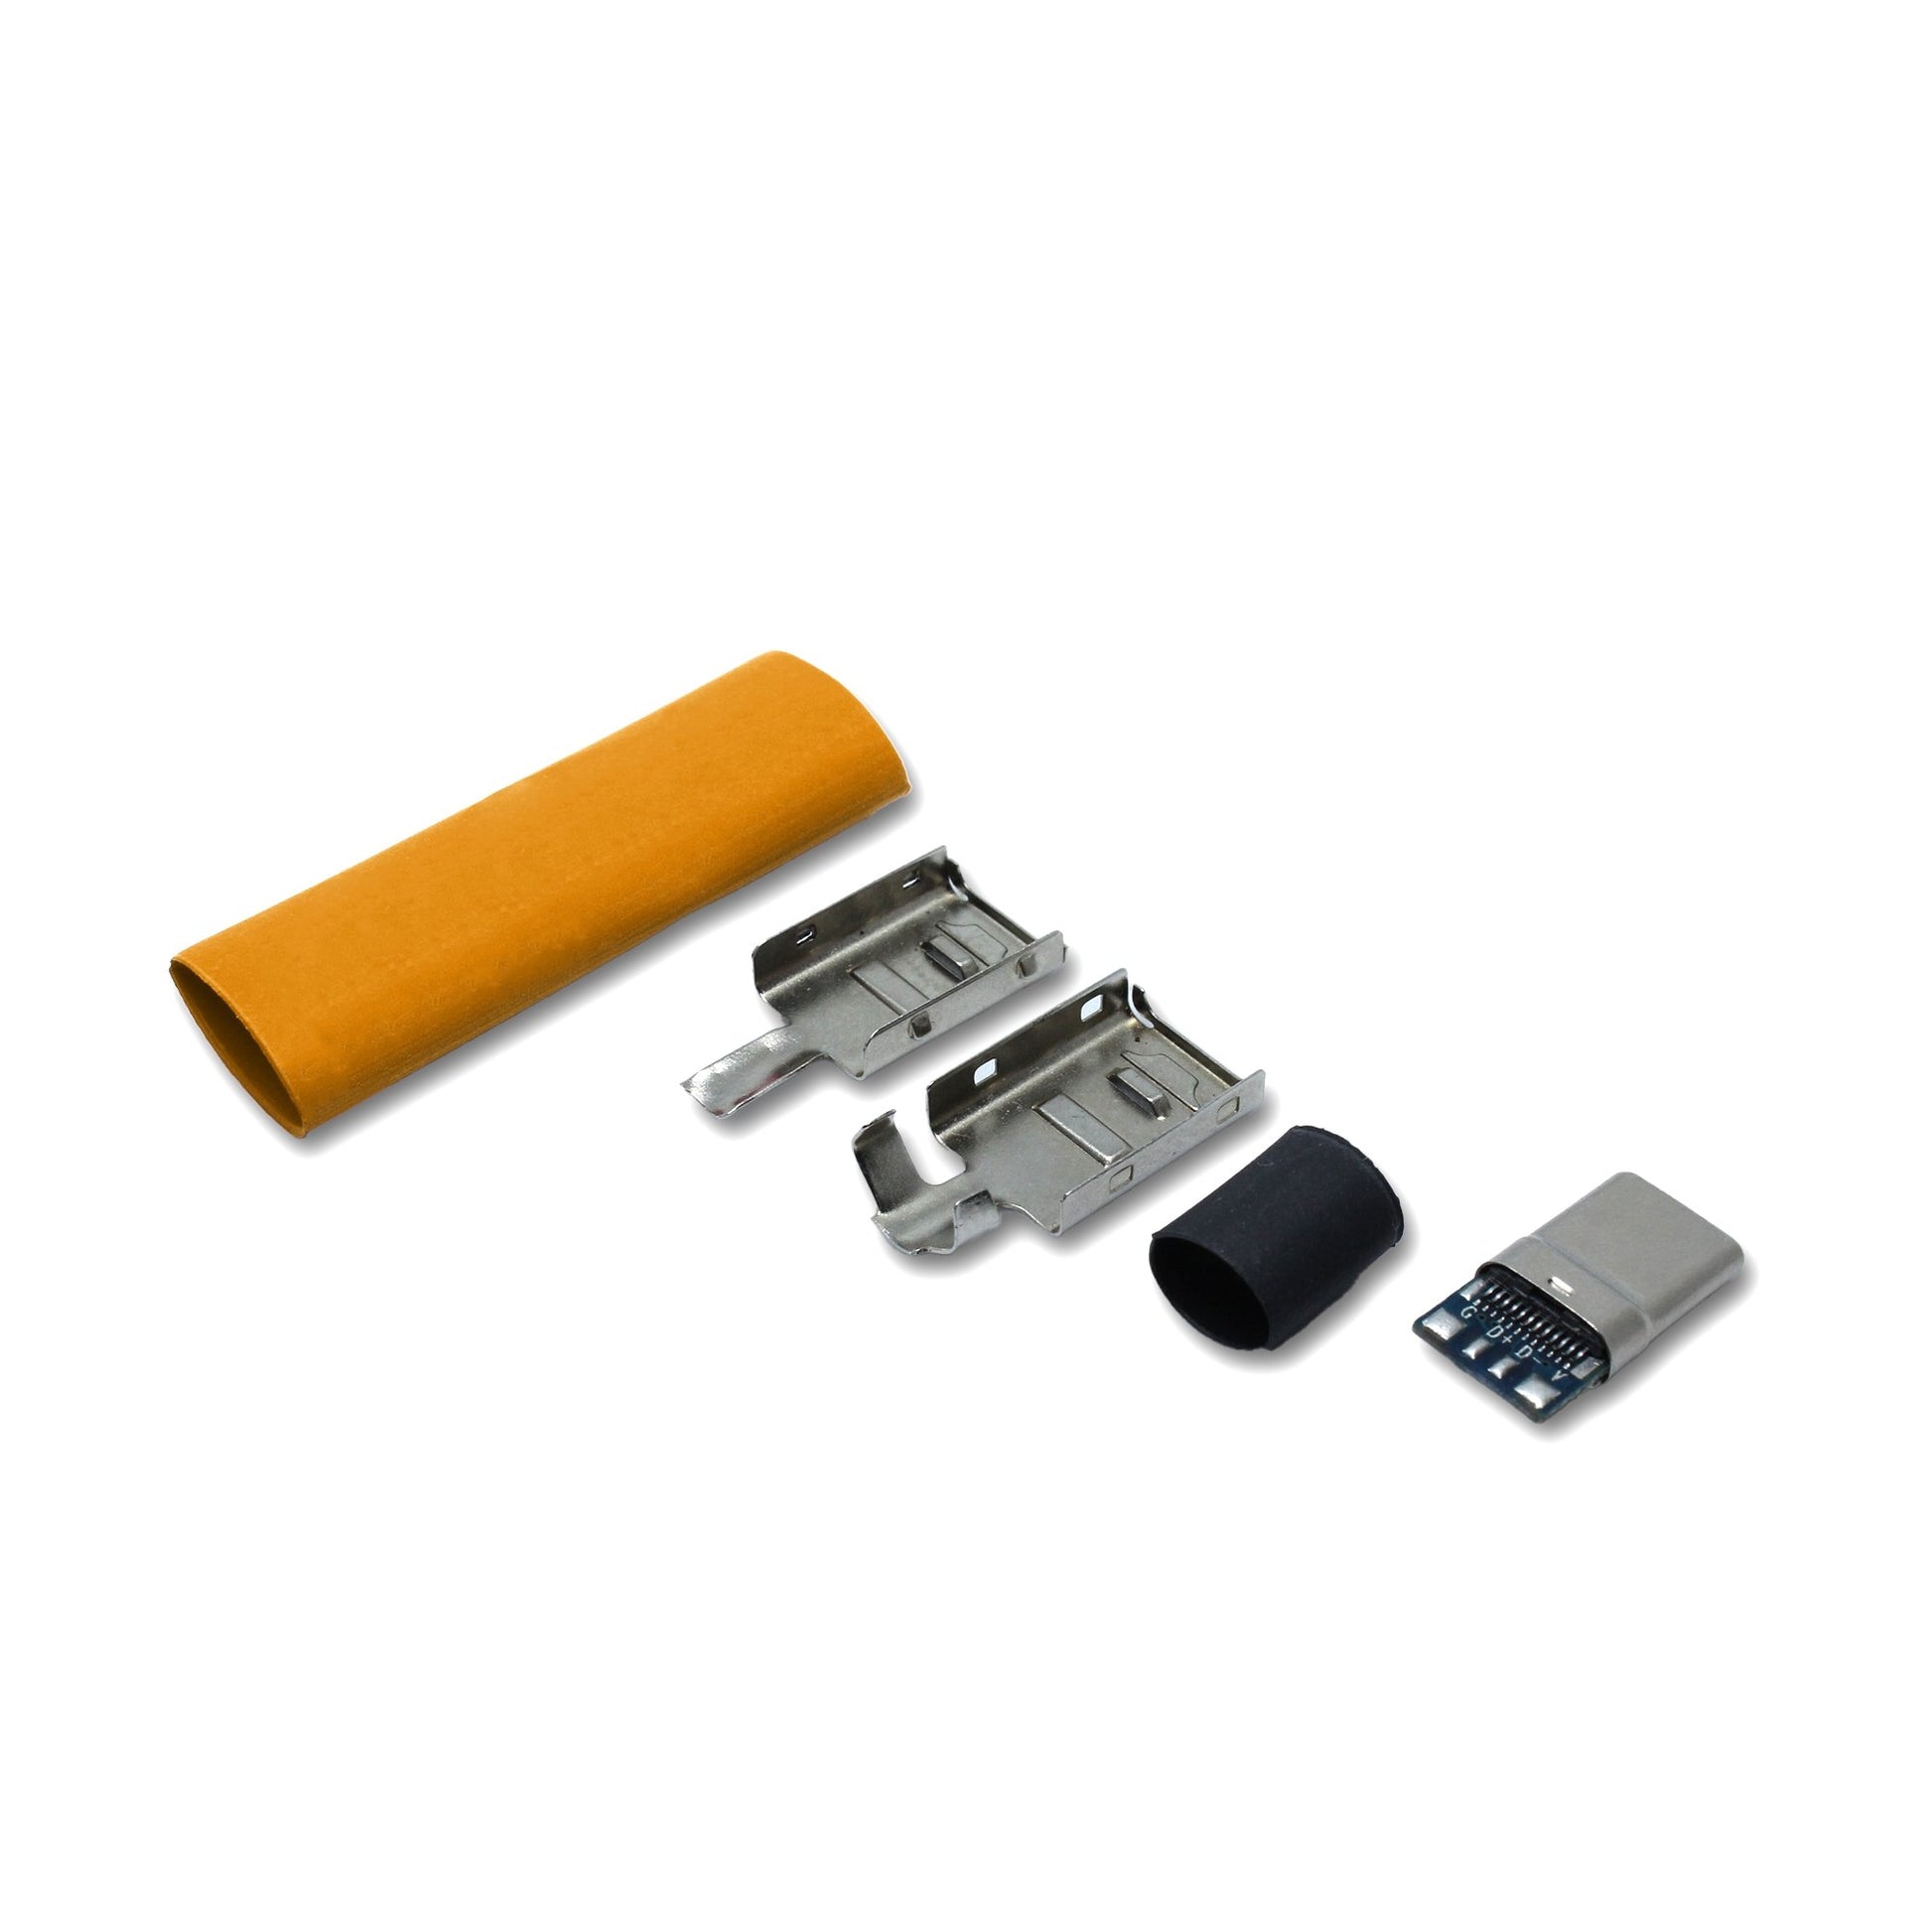 EIn recable USB C Host Stecker Set mit Schrumpfschlauch in der Farbe orange